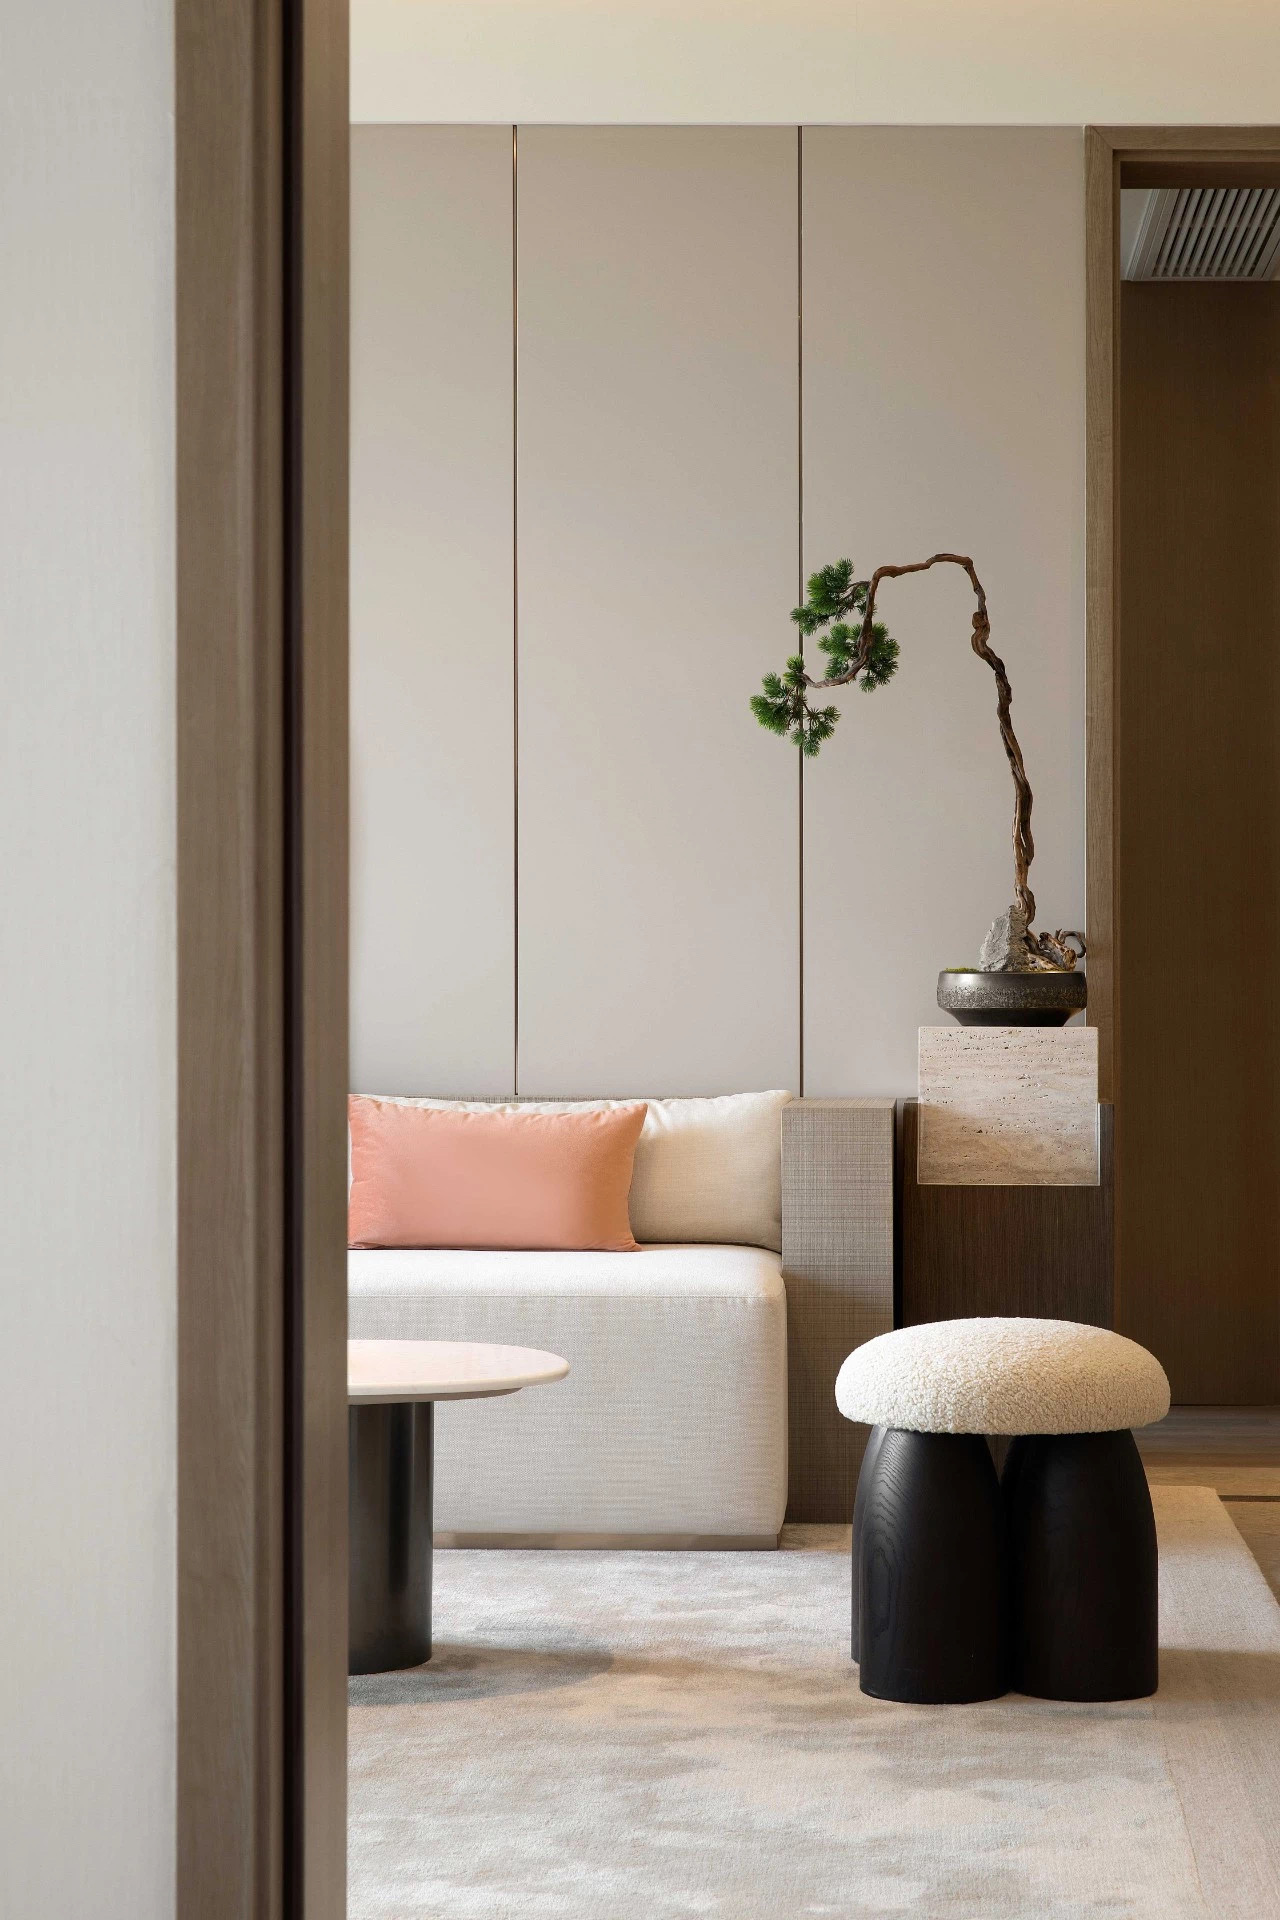 日式原木风格室内家装案例效果图-客厅茶几